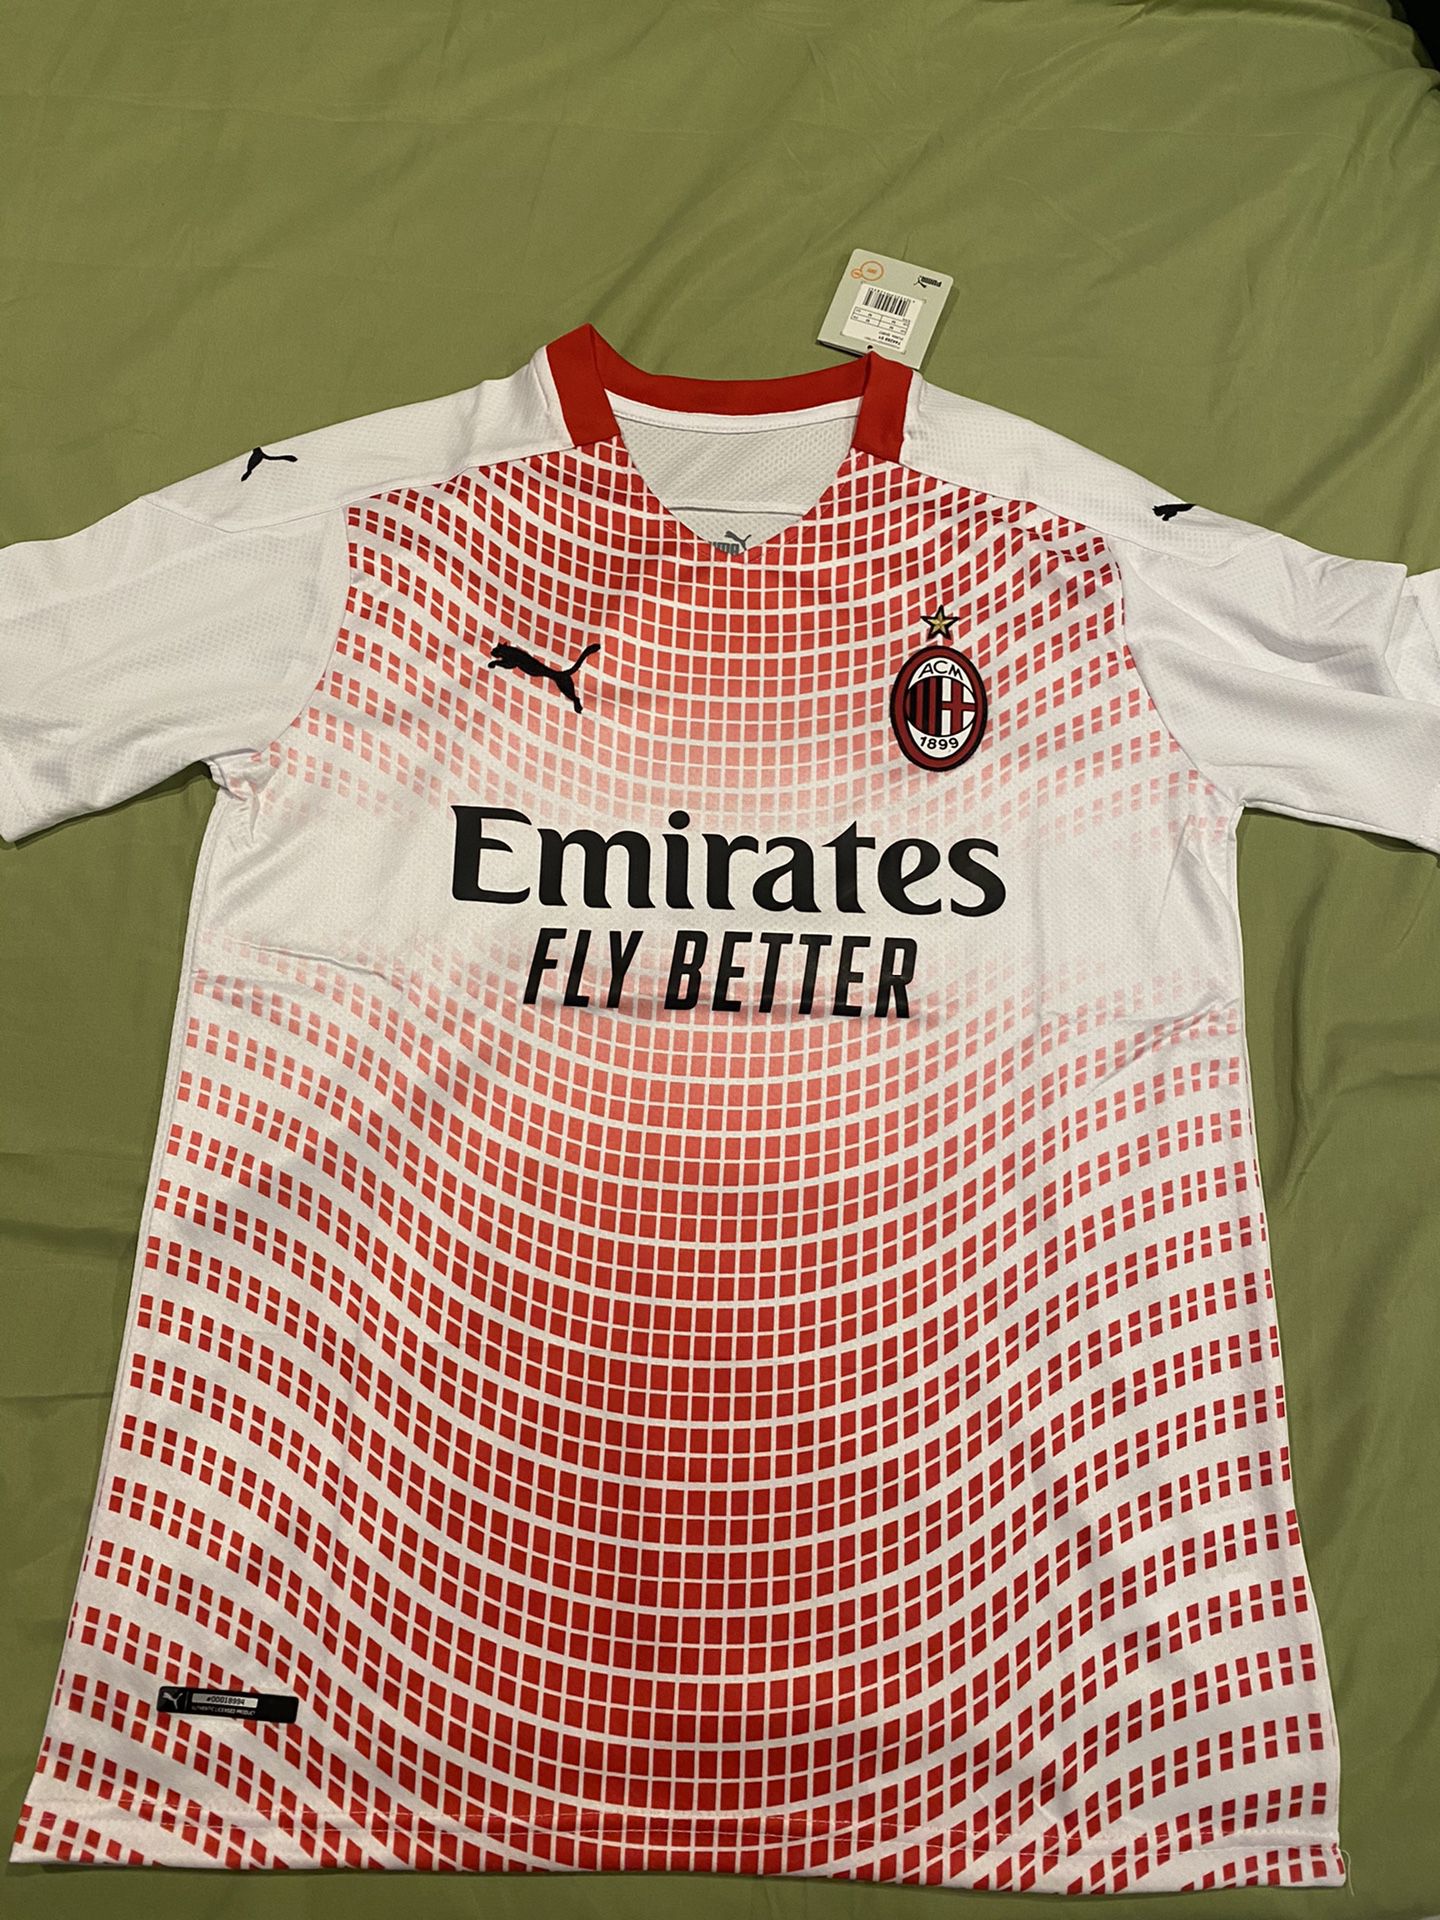 20-21 Ac Milan away soccer jersey